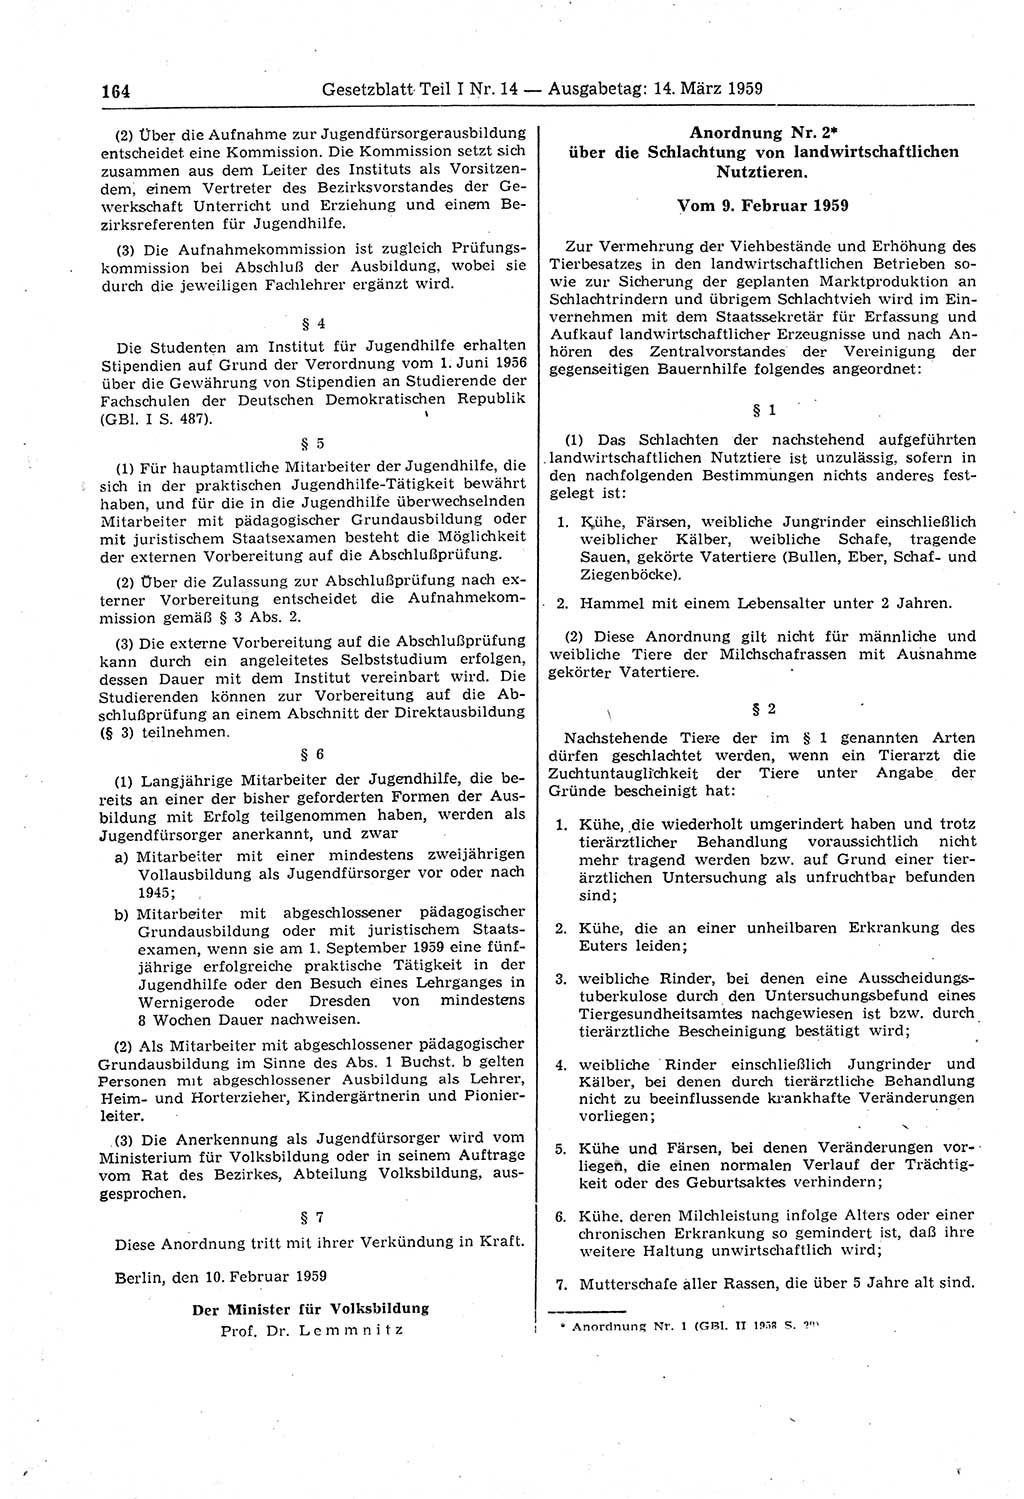 Gesetzblatt (GBl.) der Deutschen Demokratischen Republik (DDR) Teil Ⅰ 1959, Seite 164 (GBl. DDR Ⅰ 1959, S. 164)